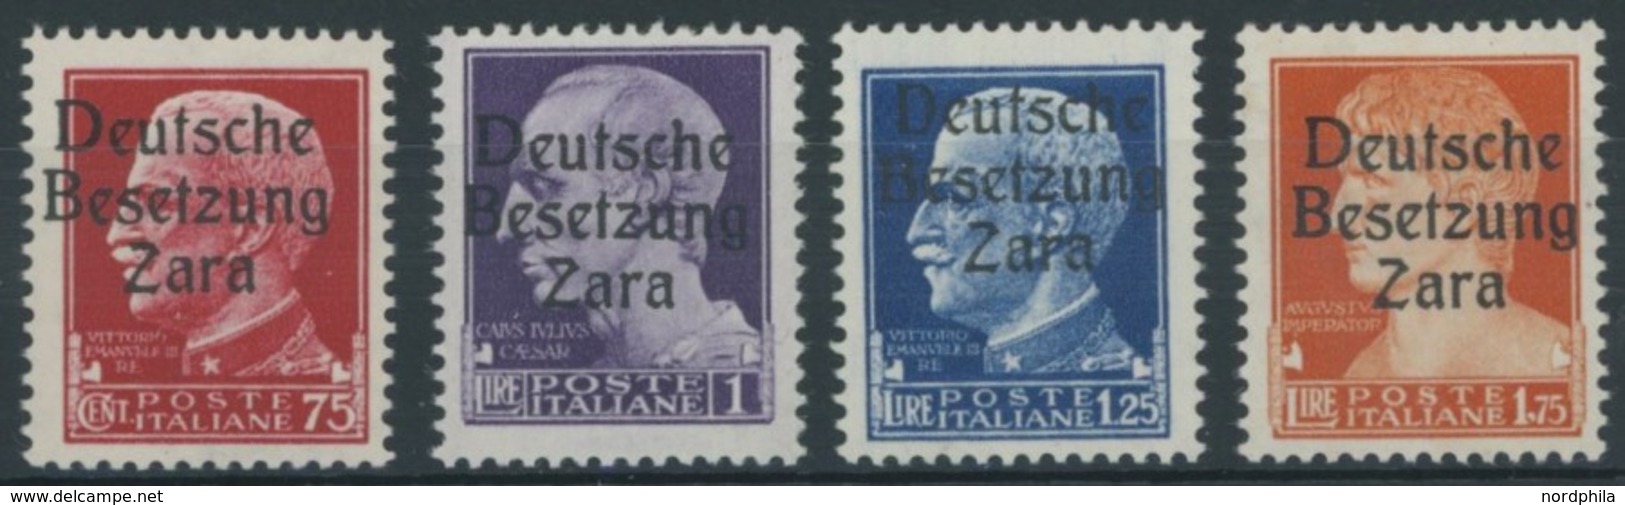 ZARA 8-11 **, 1943, 75 C. - 1.75 L. Imperiale, Postfrisch, 4 Prachtwerte, Meist Gepr. Ludin, Mi. 116.- - Deutsche Bes.: Zara